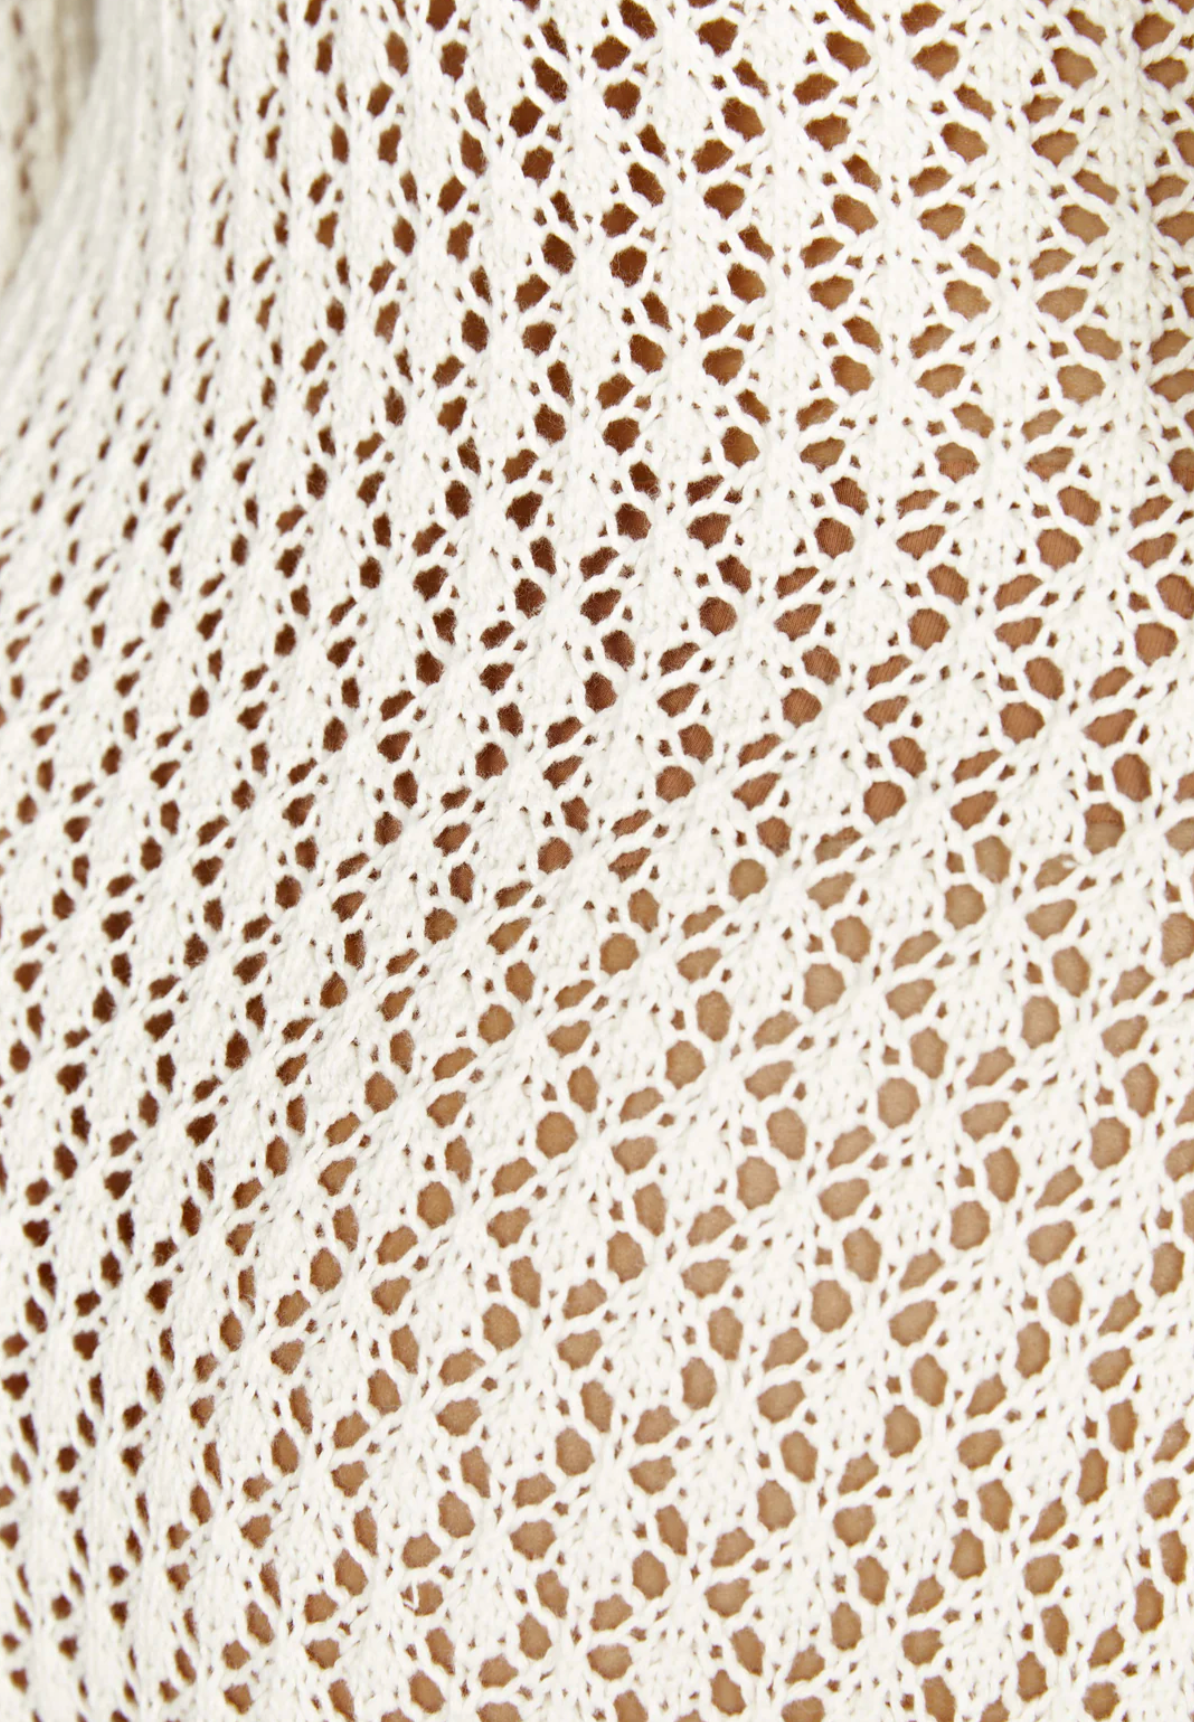 Feona® | Crochet Maxi Dress